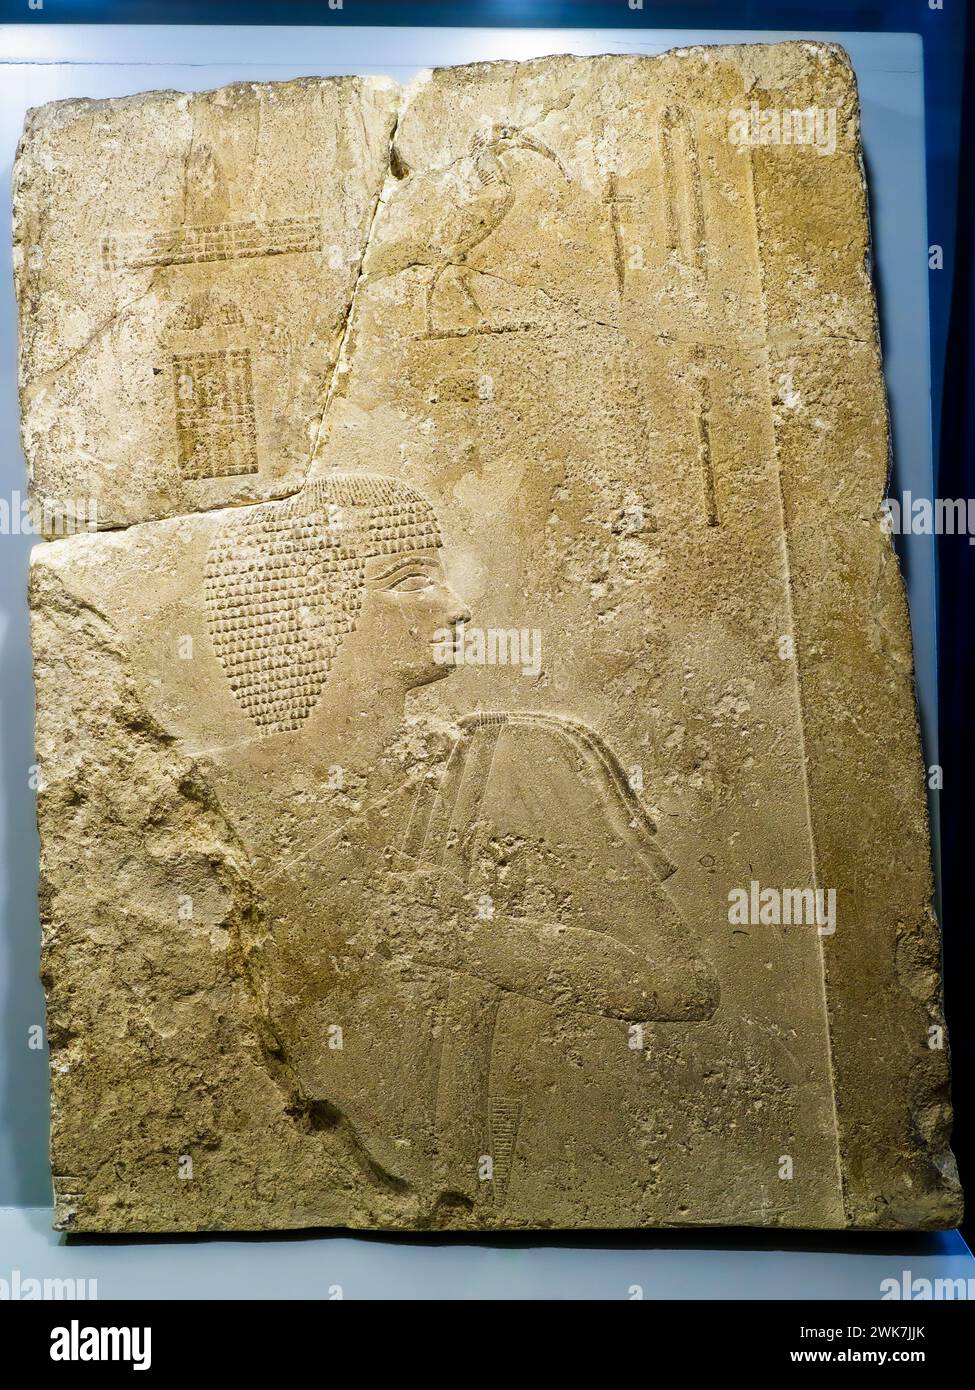 Rilievo murale dalla tomba di Akhethotep - Vecchio regno, Dinastia IV (2640 - 2520 a.C.) - calcare - dal basso Egitto, Giza - Museo di Scultura Antica Giovanni Barracco, Roma, Italia Foto Stock